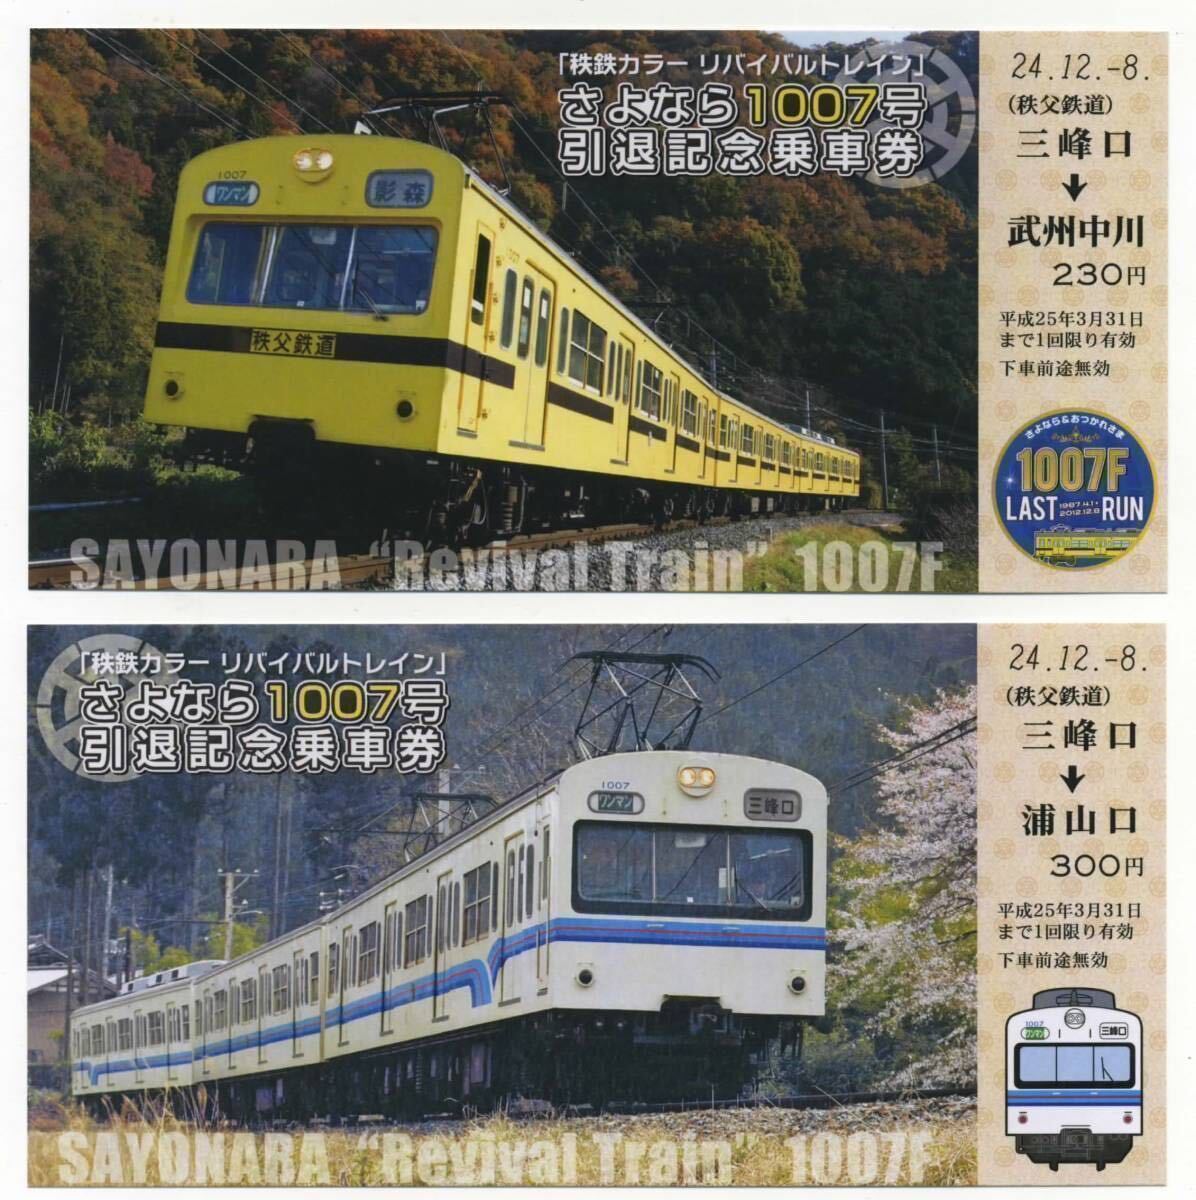 【秩父鉄道】秩鉄カラー・リバイバルトレイン 1007号引退記念乗車券① 2012.12.8の画像2